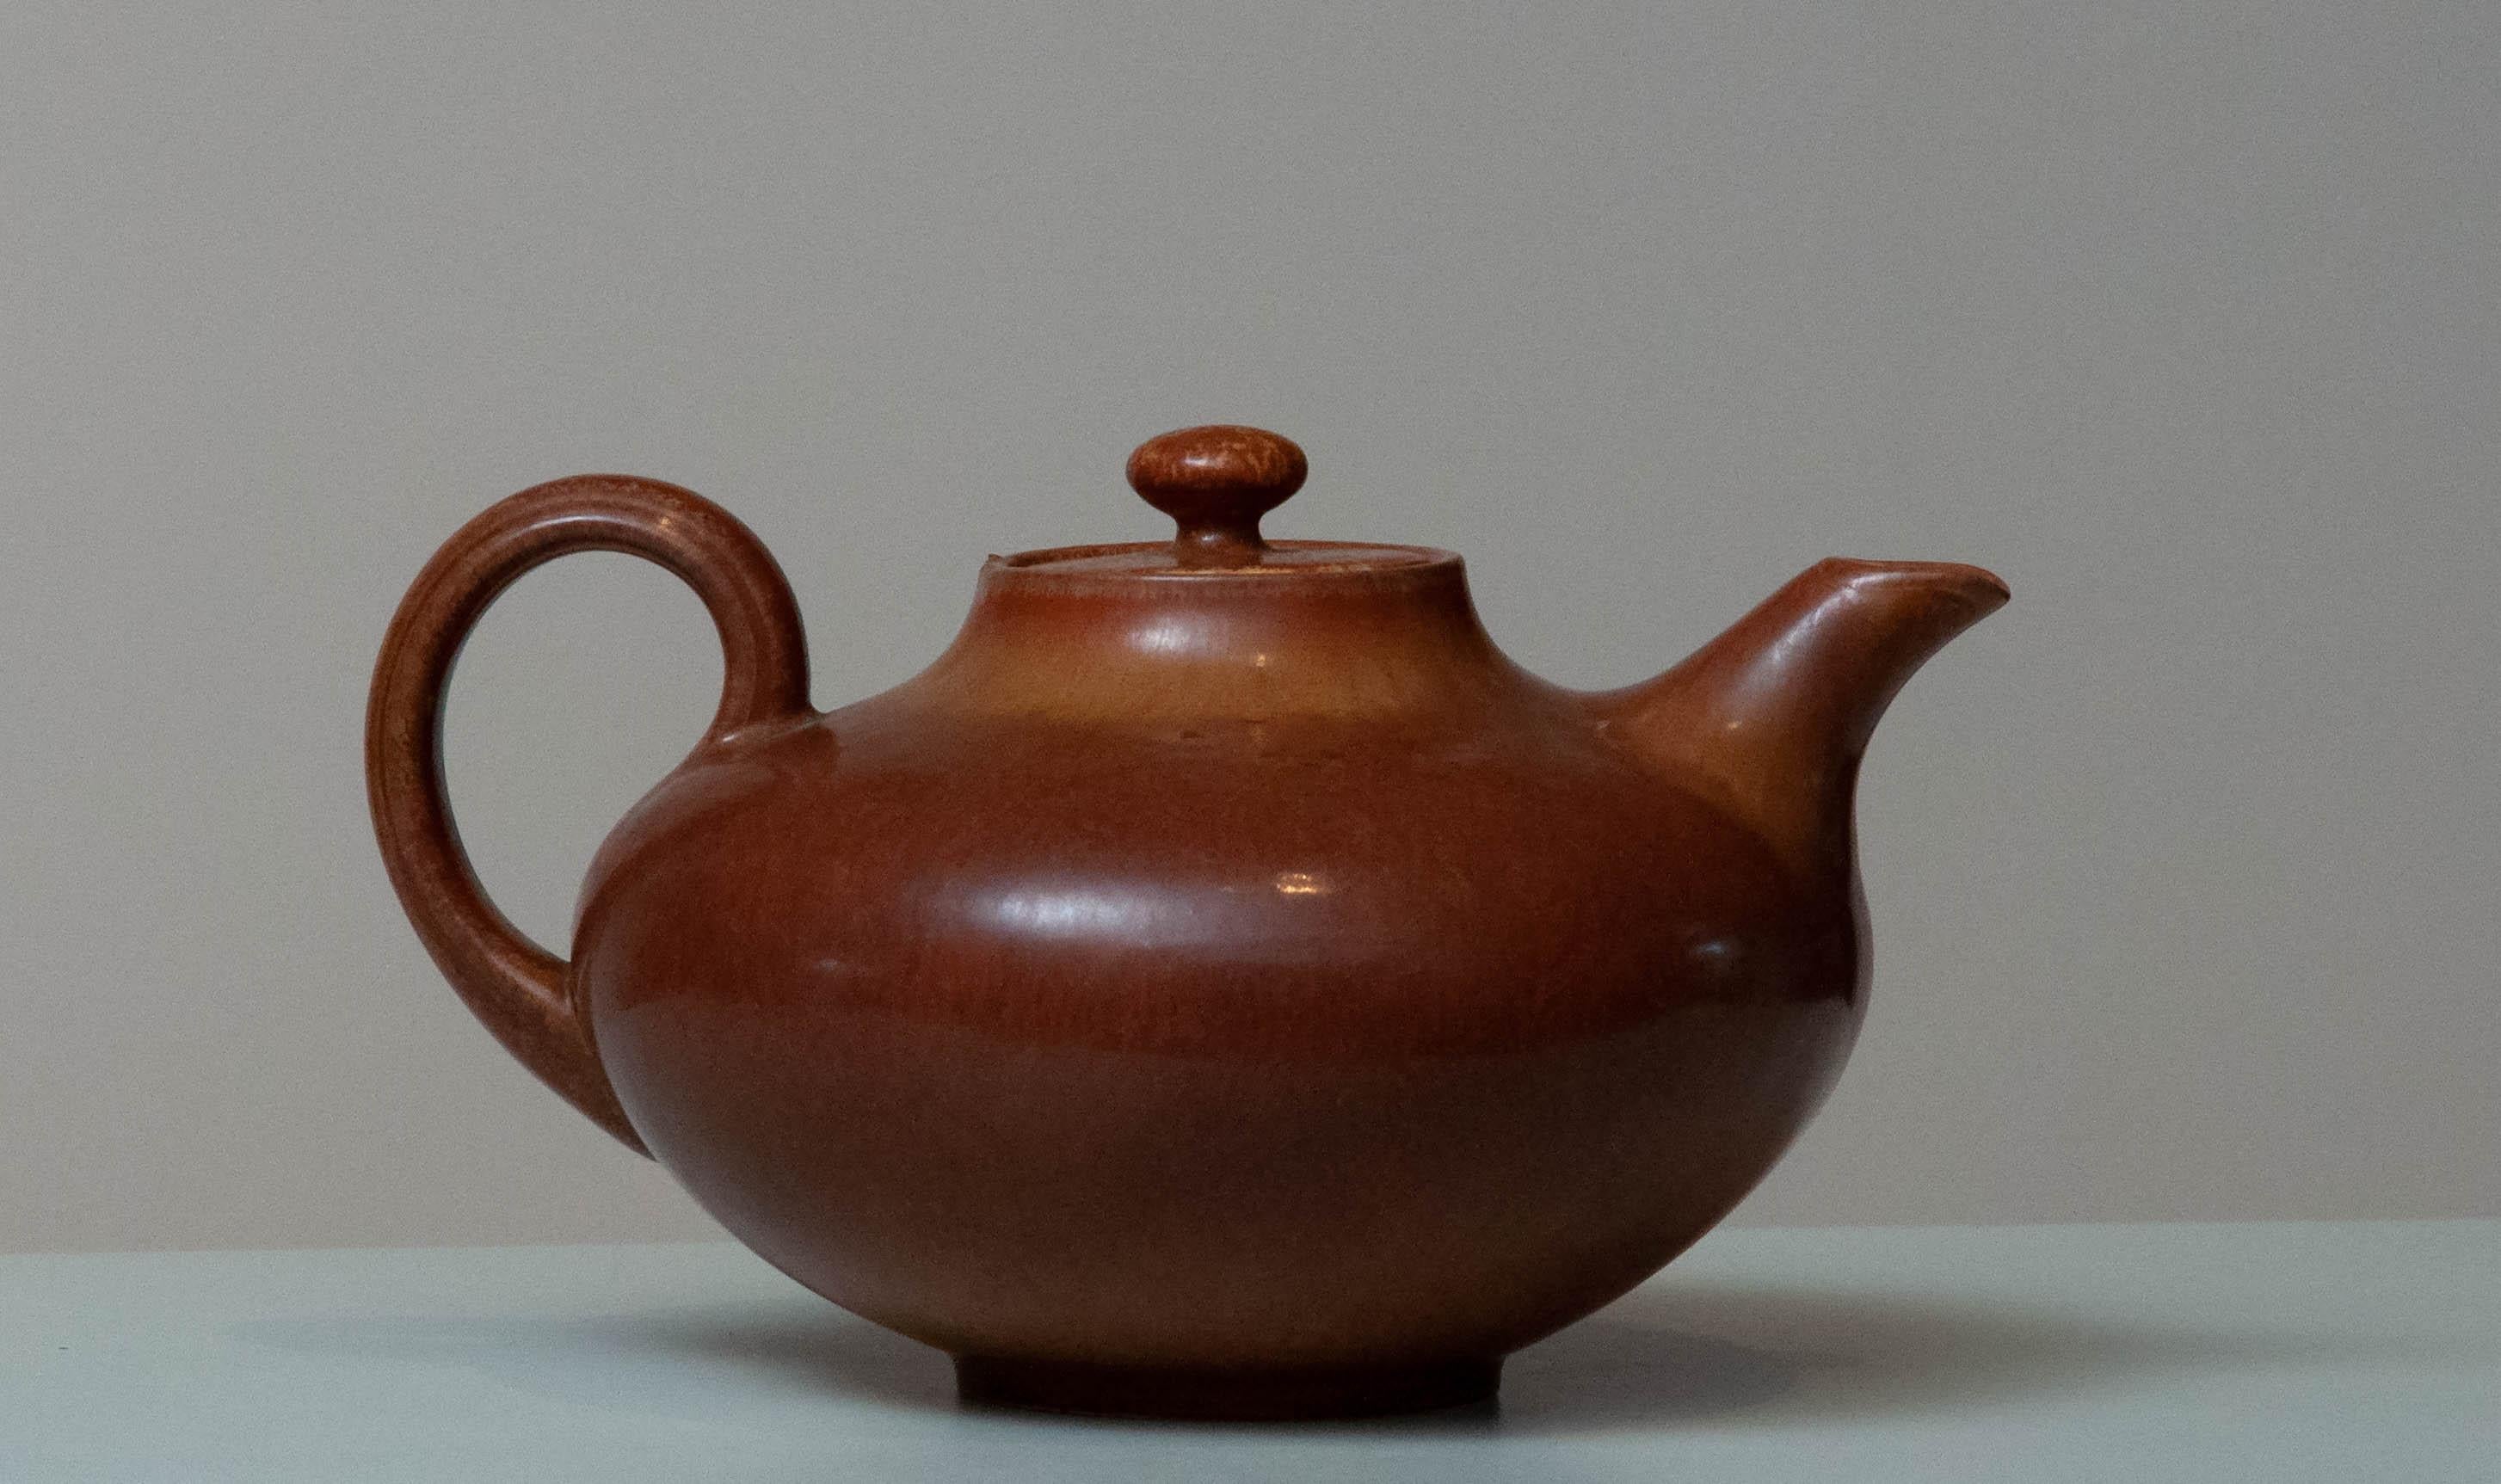 Absolut 1. Qualität Rörstrand Teekanne entworfen von Gunnar Nylund in Geist Zustand. Diese Teekanne ist innen so sauber wie außen und in der schönsten braunen Farbkombination gefertigt und innen ist die beige glasierte Keramik wie neu.
